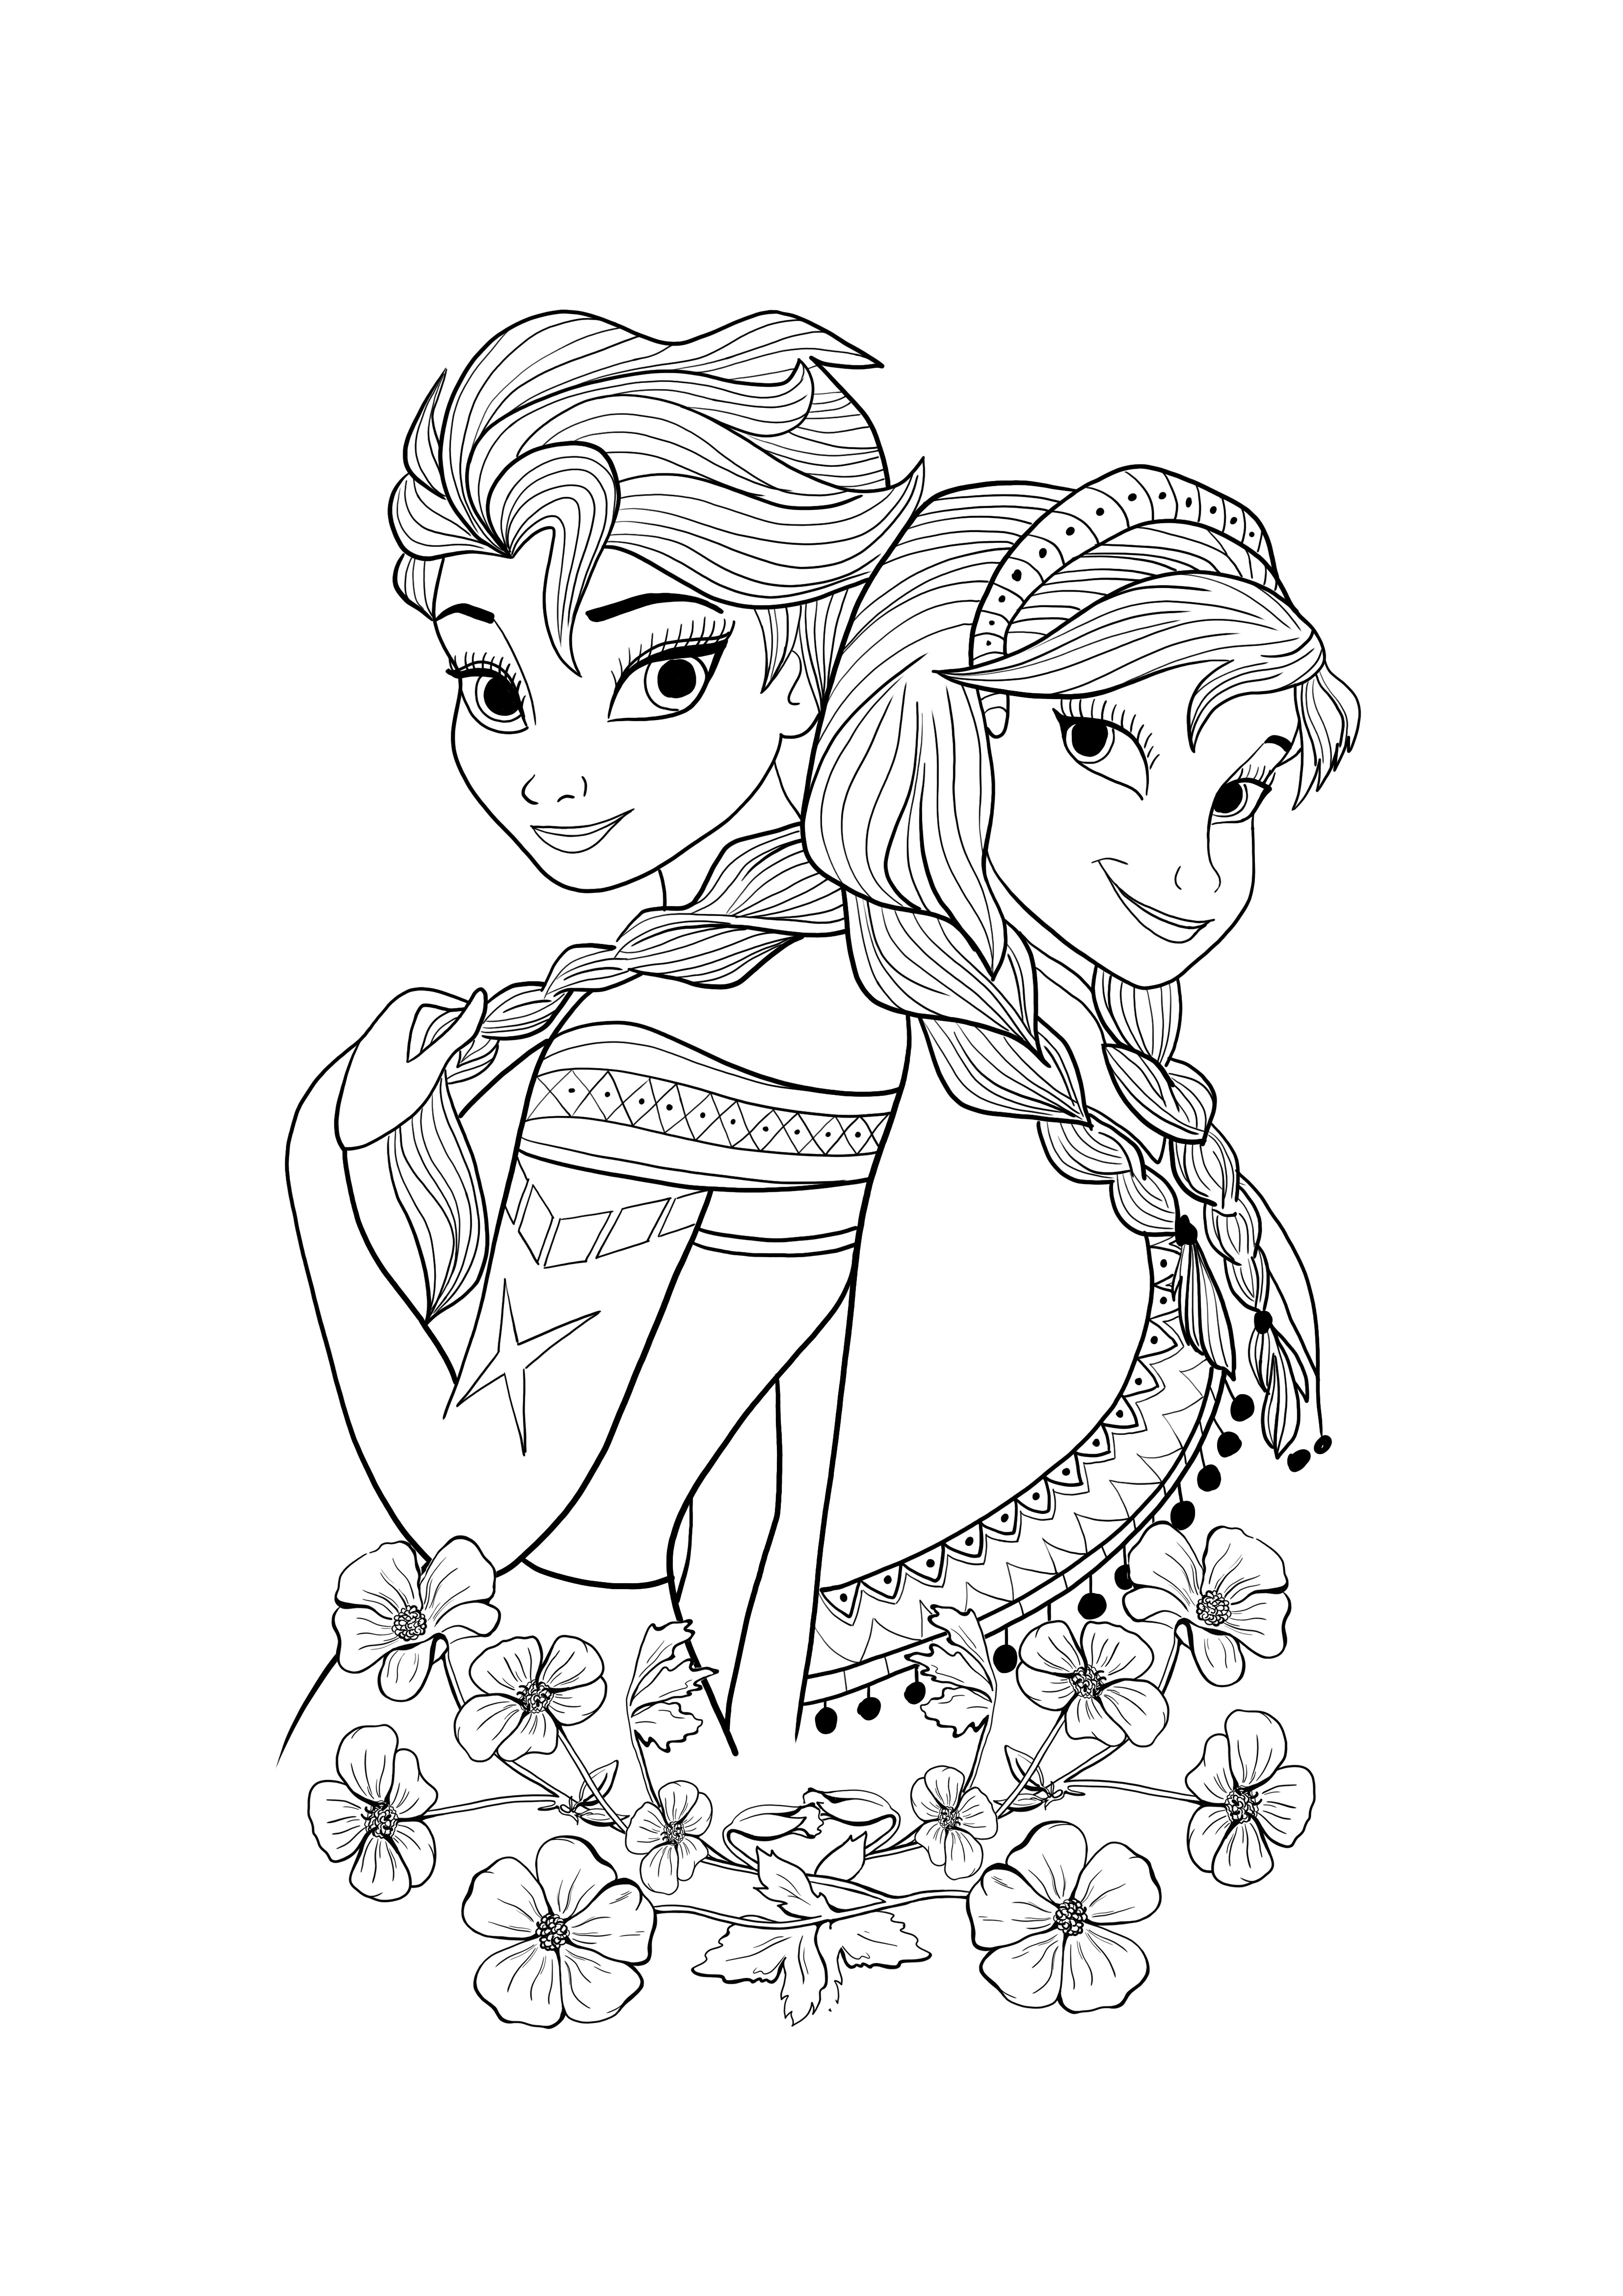 Elsa ve Ana ücretsiz indirebilir ve renklendirebilir